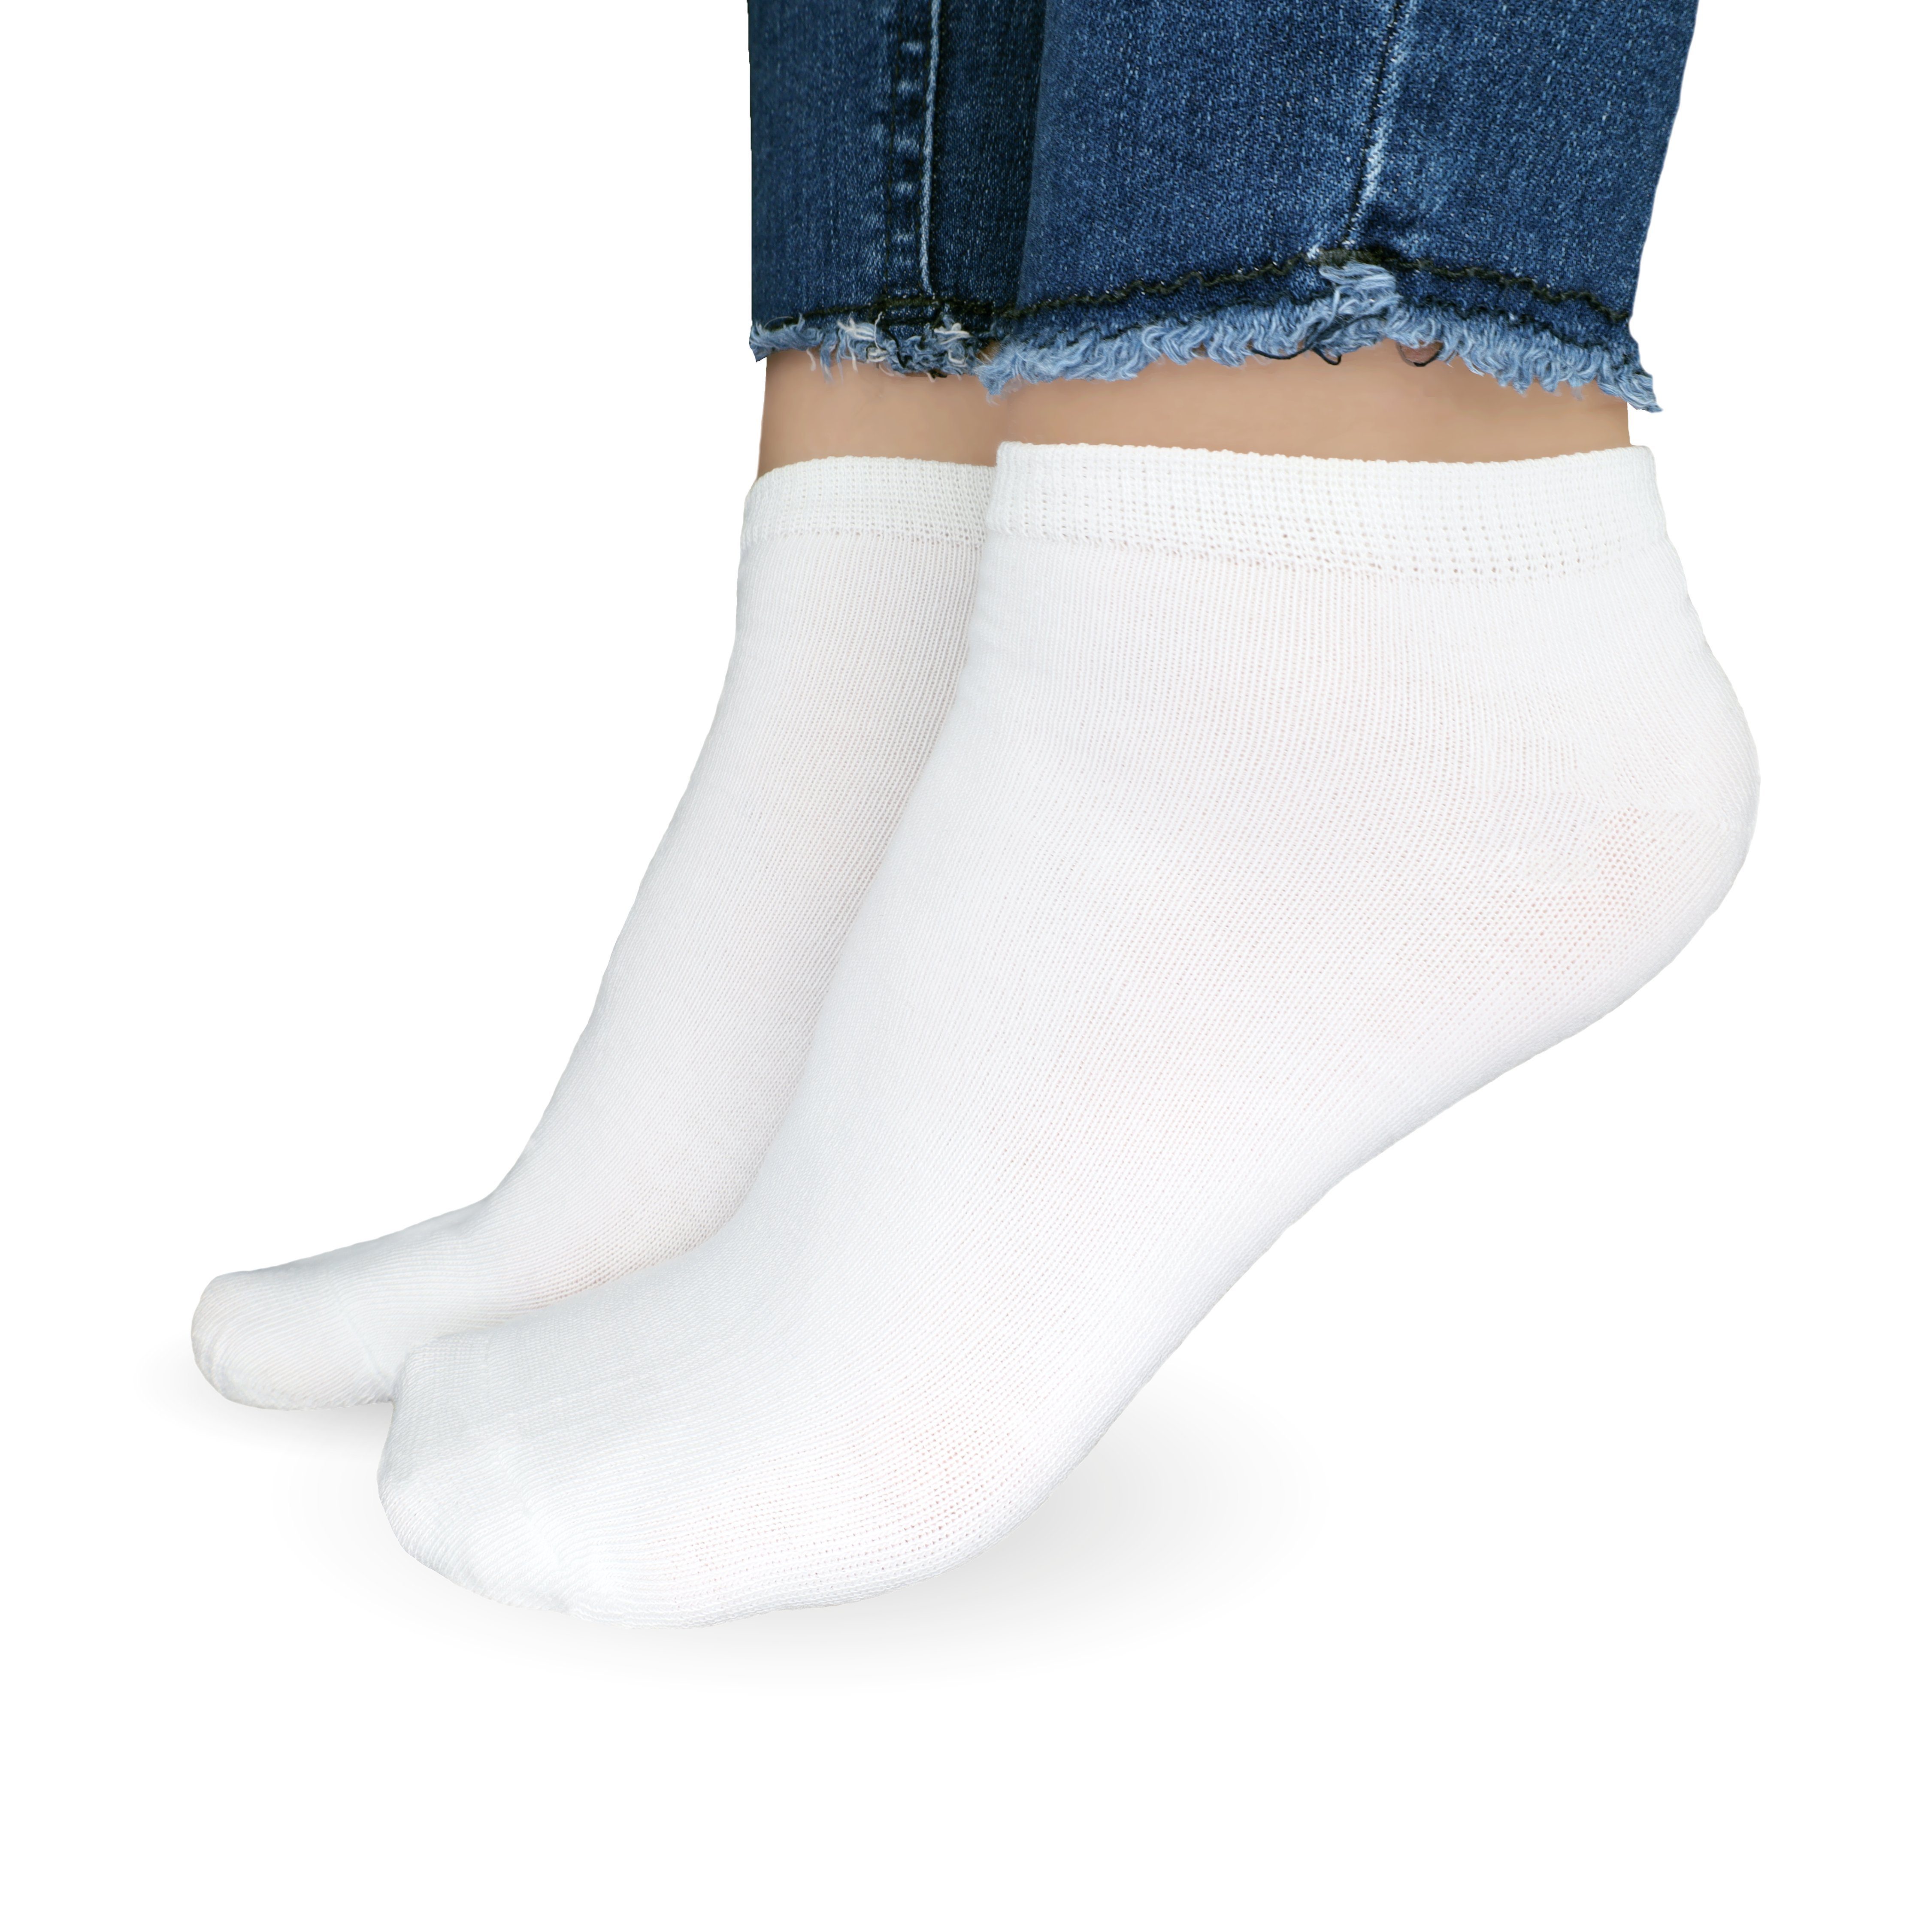 Socken aus & Paar) Weiß Herren Damen atmungsaktive (Größen SO.I 5-20 Baumwolle Freizeitsocken 5x Socken Sneaker Unisex 35-46,